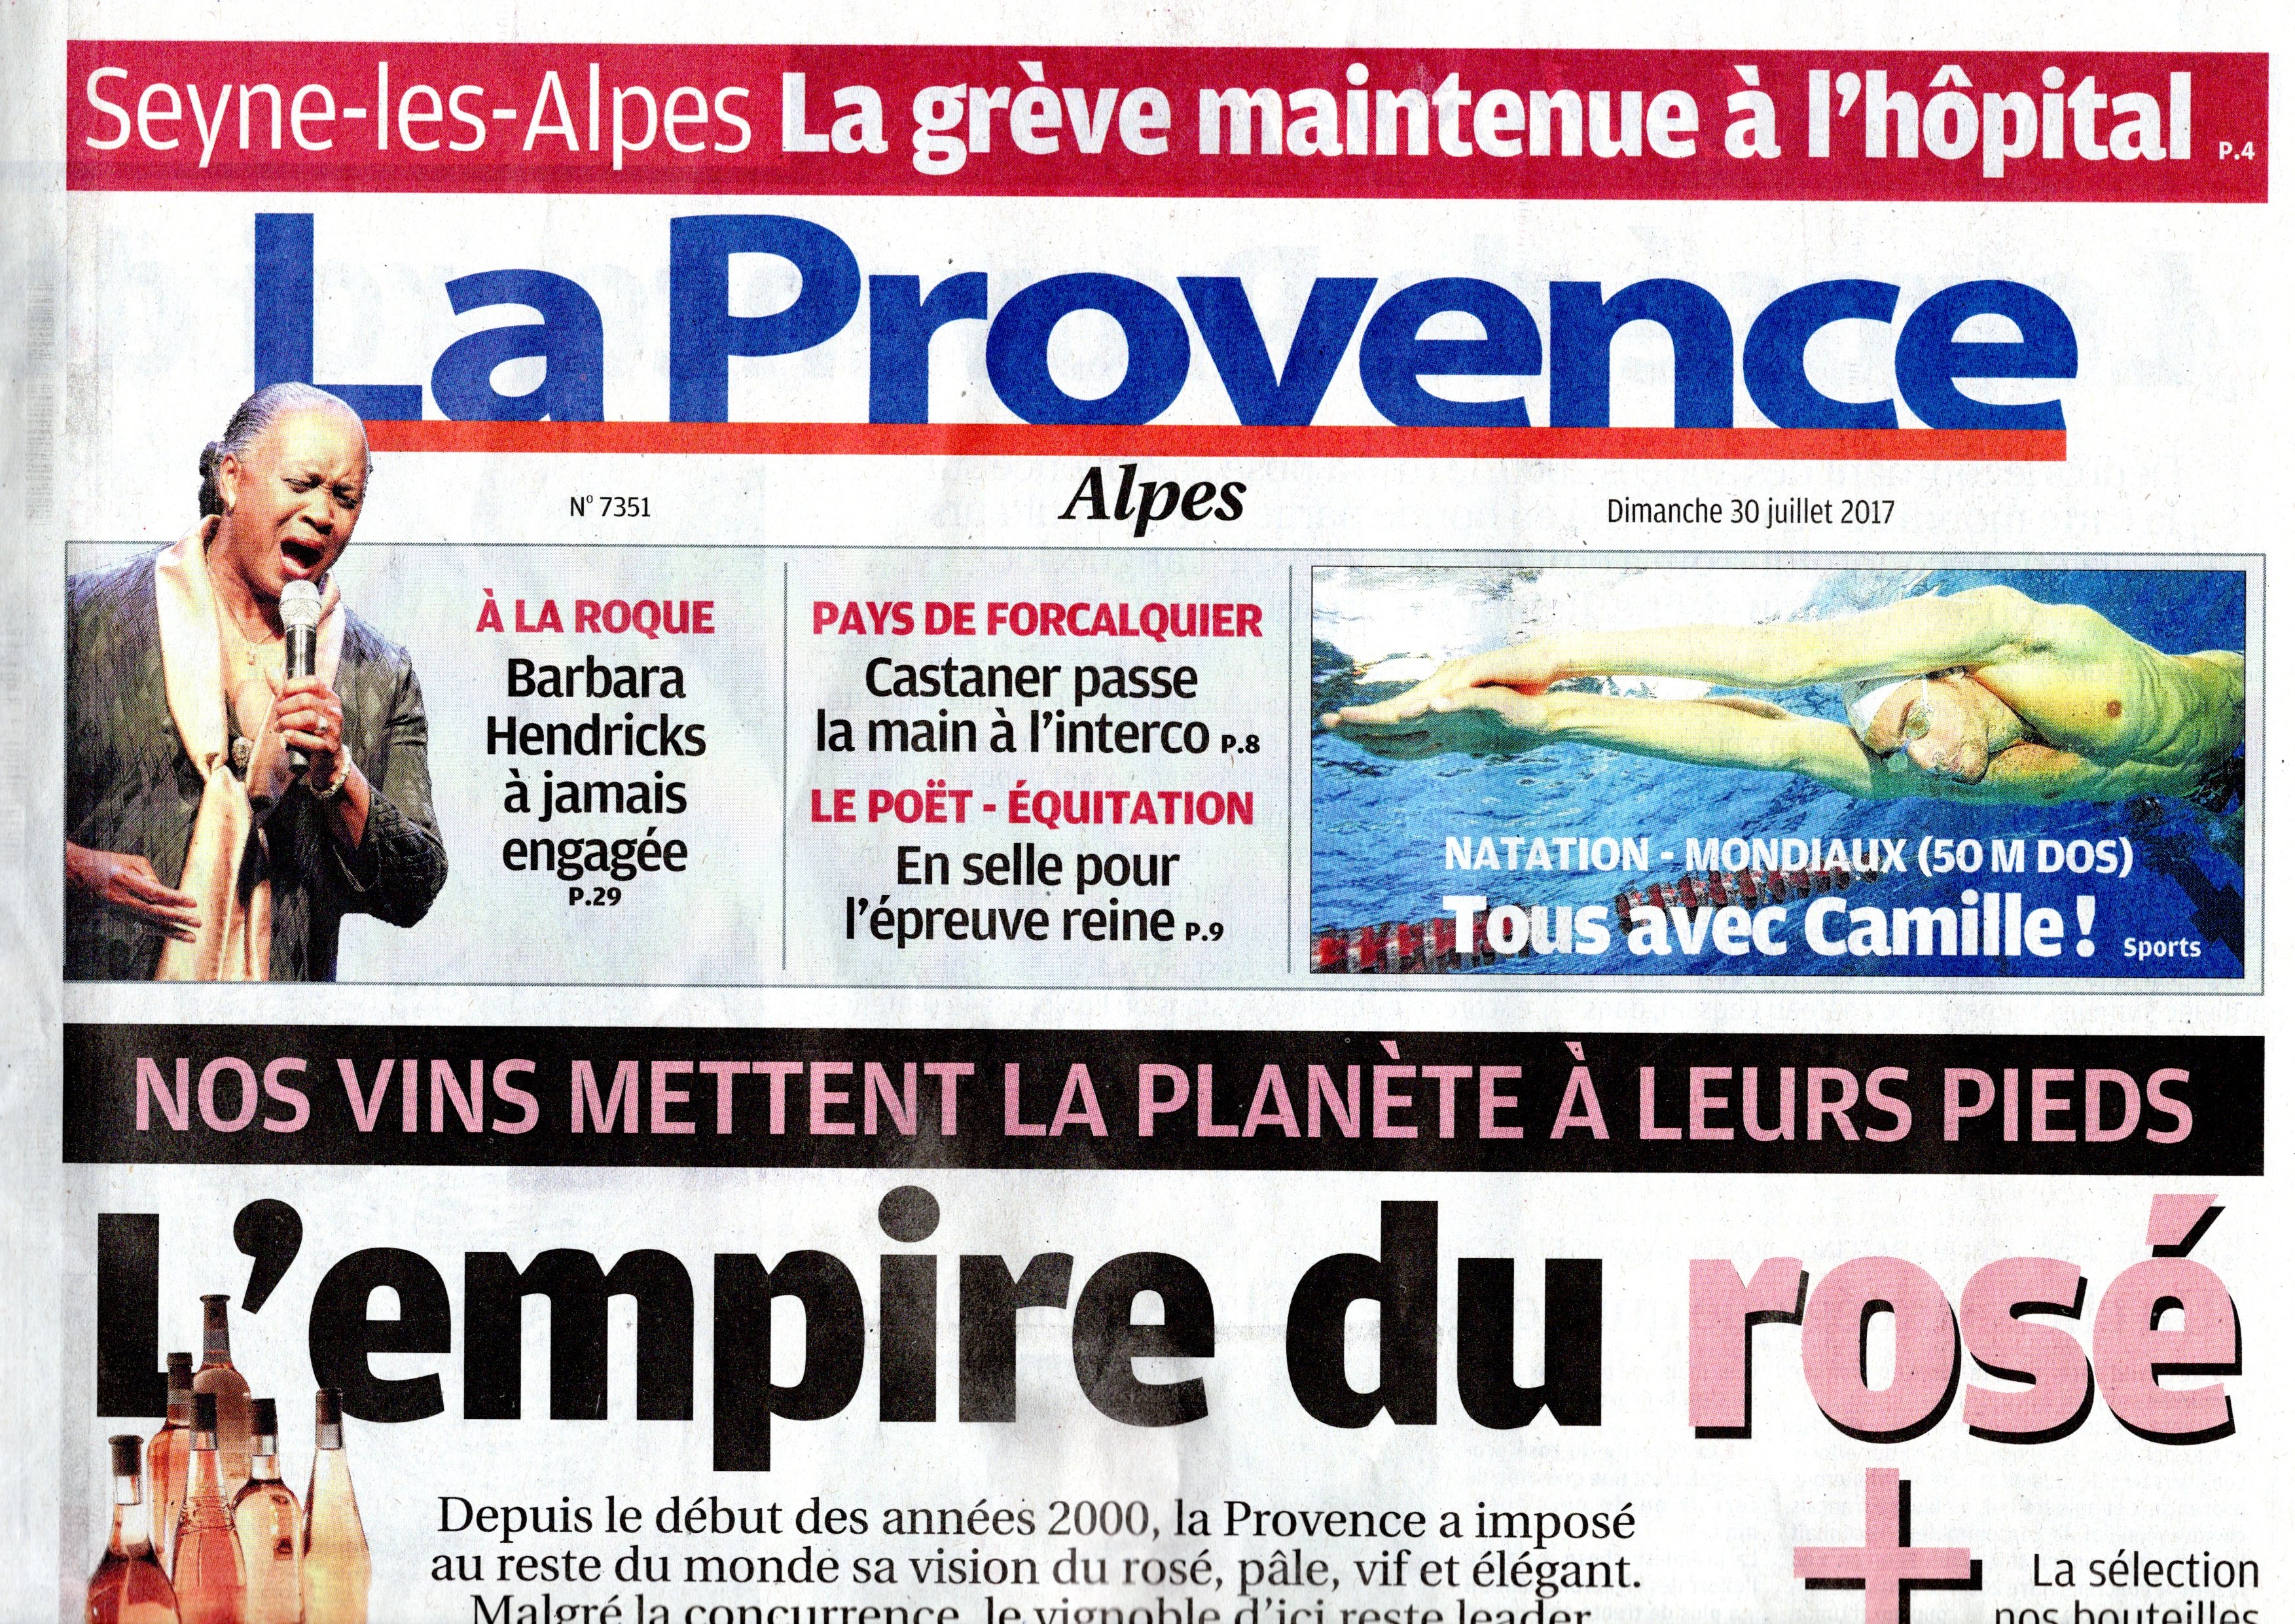 831. La Provence grève Seyne les Alpes (p1)